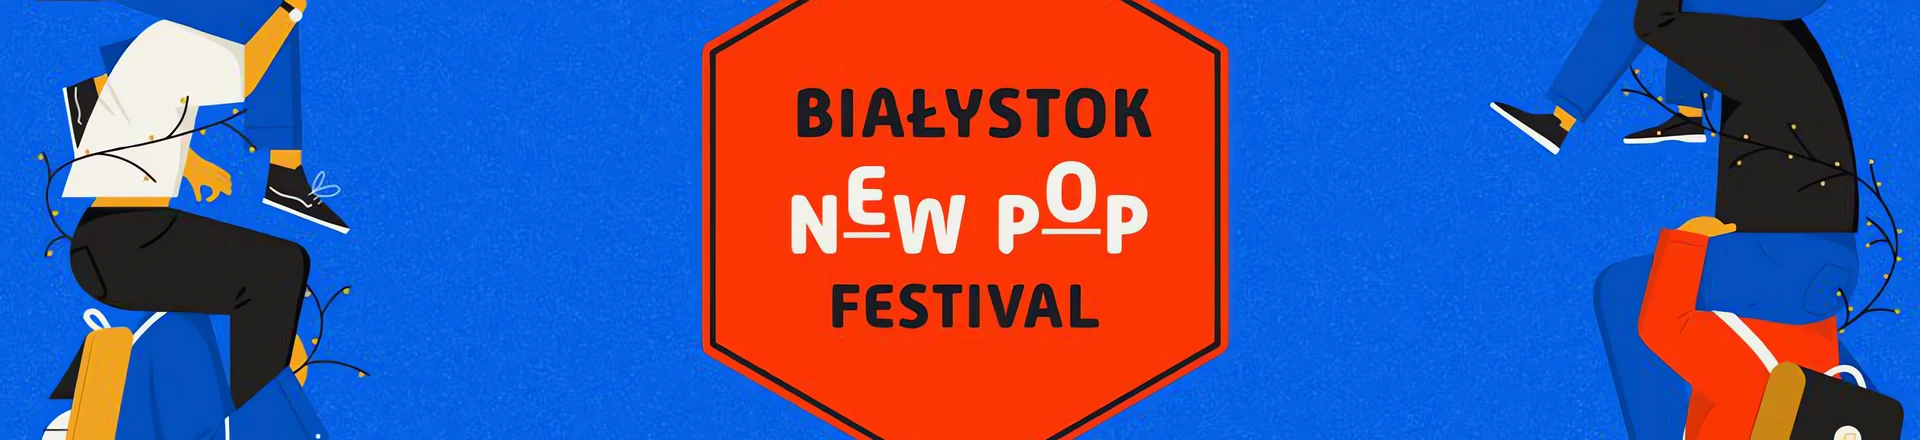  Agora zaprasza na 4. edycję Białystok New Pop Festival